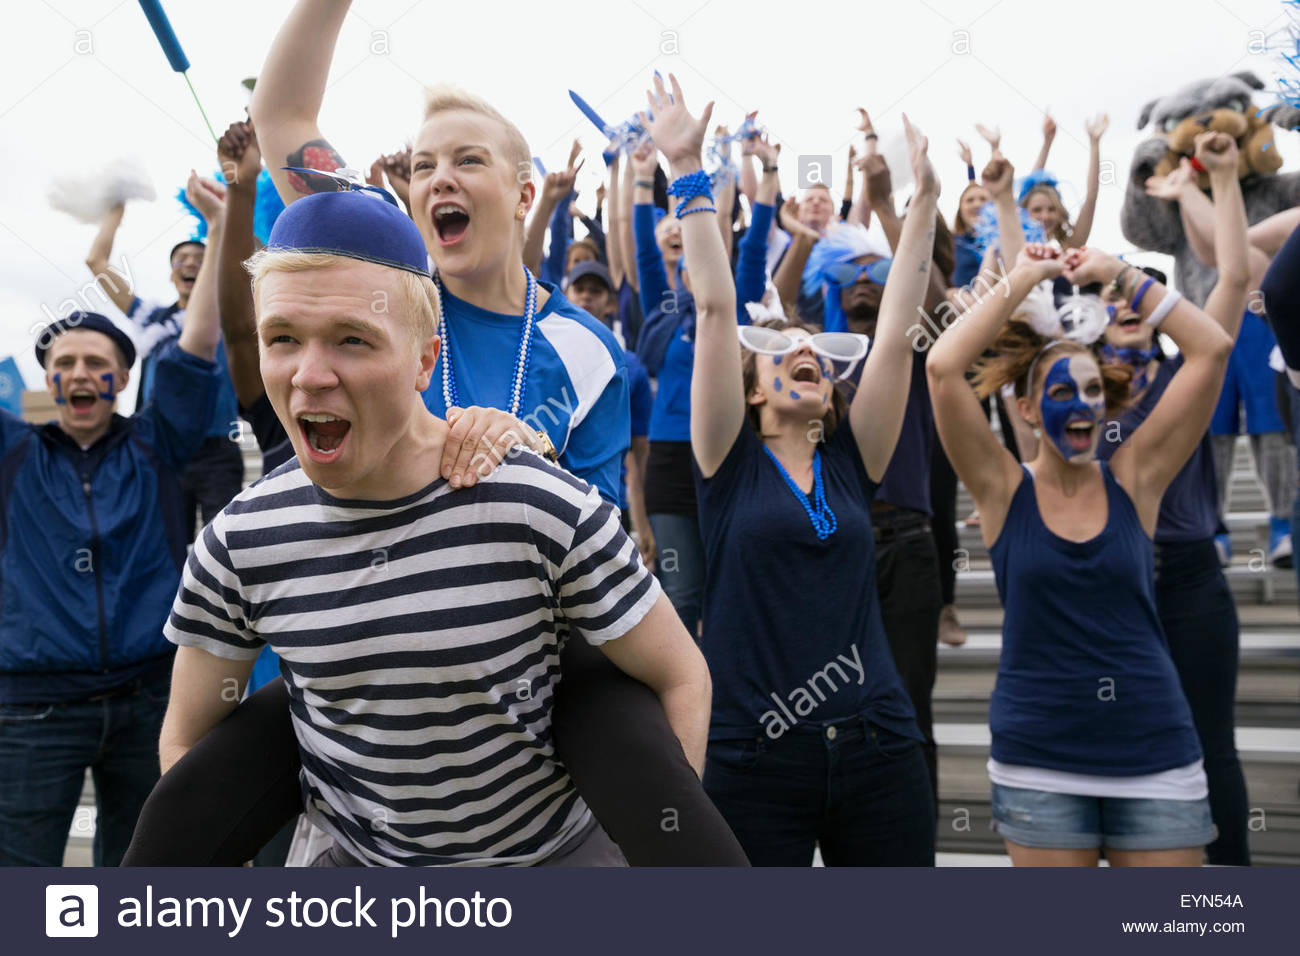 Entusiastas fans en azul vítores gradas evento deportivo Foto de stock